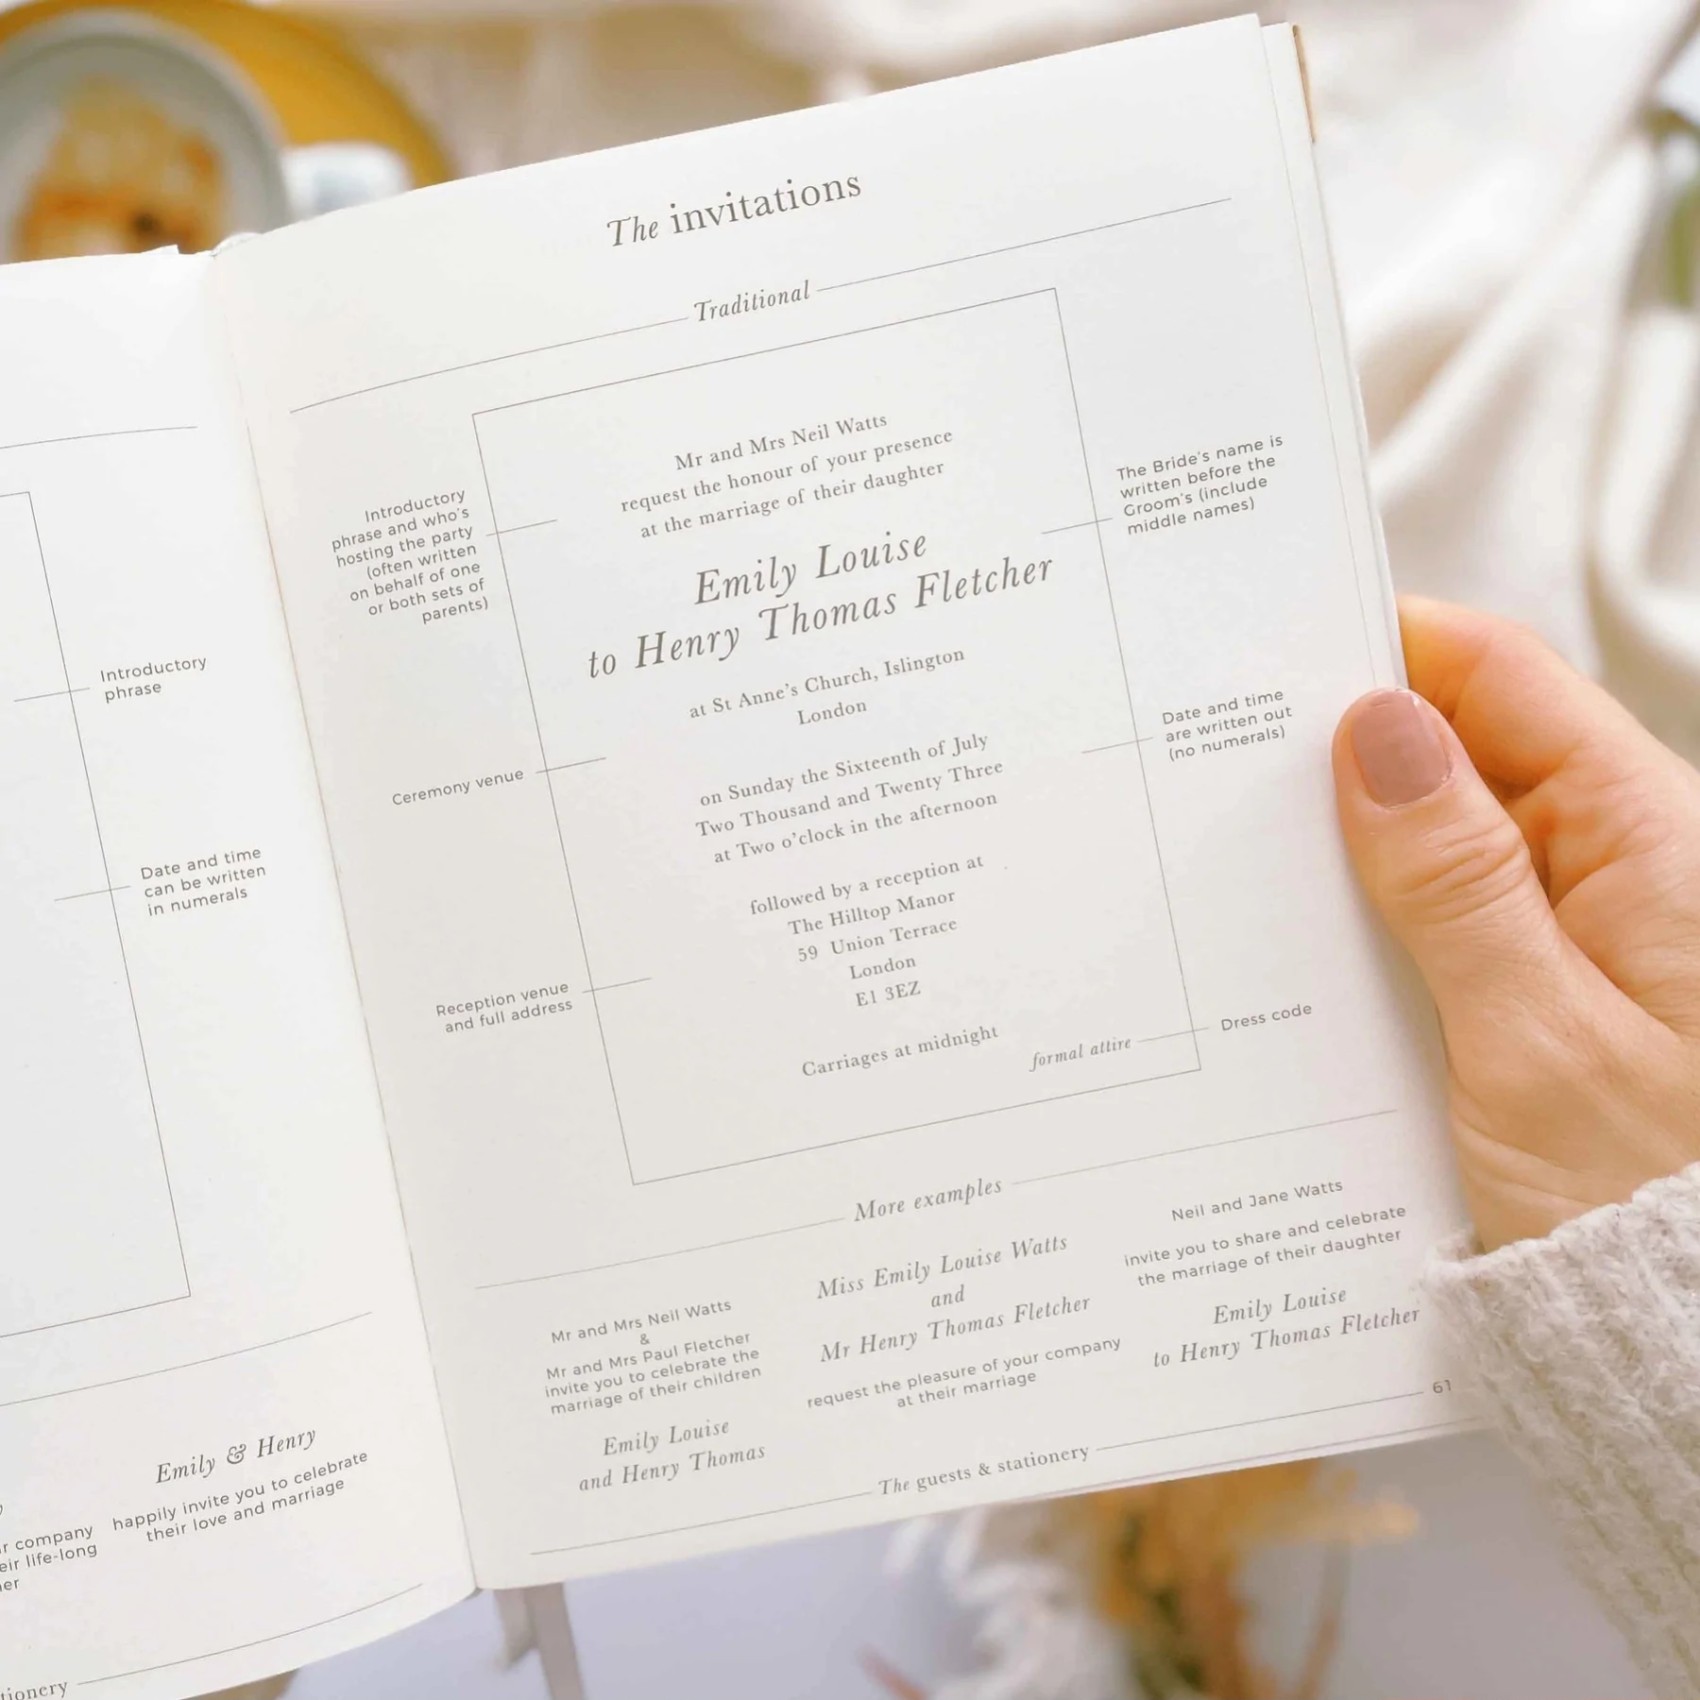 NEW Luxury White Wedding Planner Book, Engagement Gift, Wedding Scrapbook,  Gift for Brides, Checklist, Wedding Organizer, W/gilded Edges 